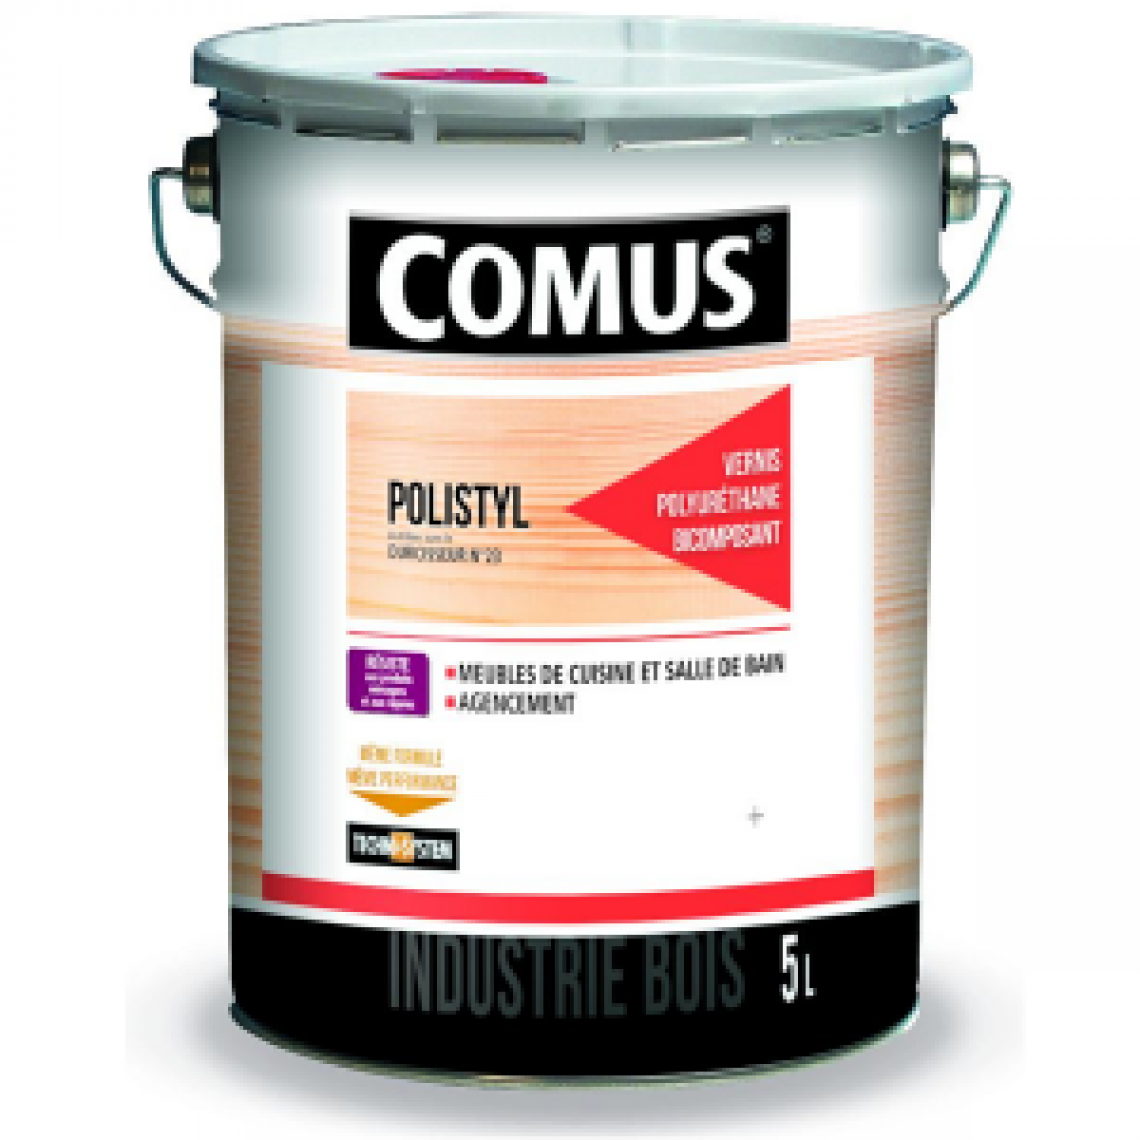 Comus - Vernis finition bi-couche polyuréthane Polystyl 2062 COMUS - SAT30 - 5 L - 7774 - Matériel de pose, produits d'entretien